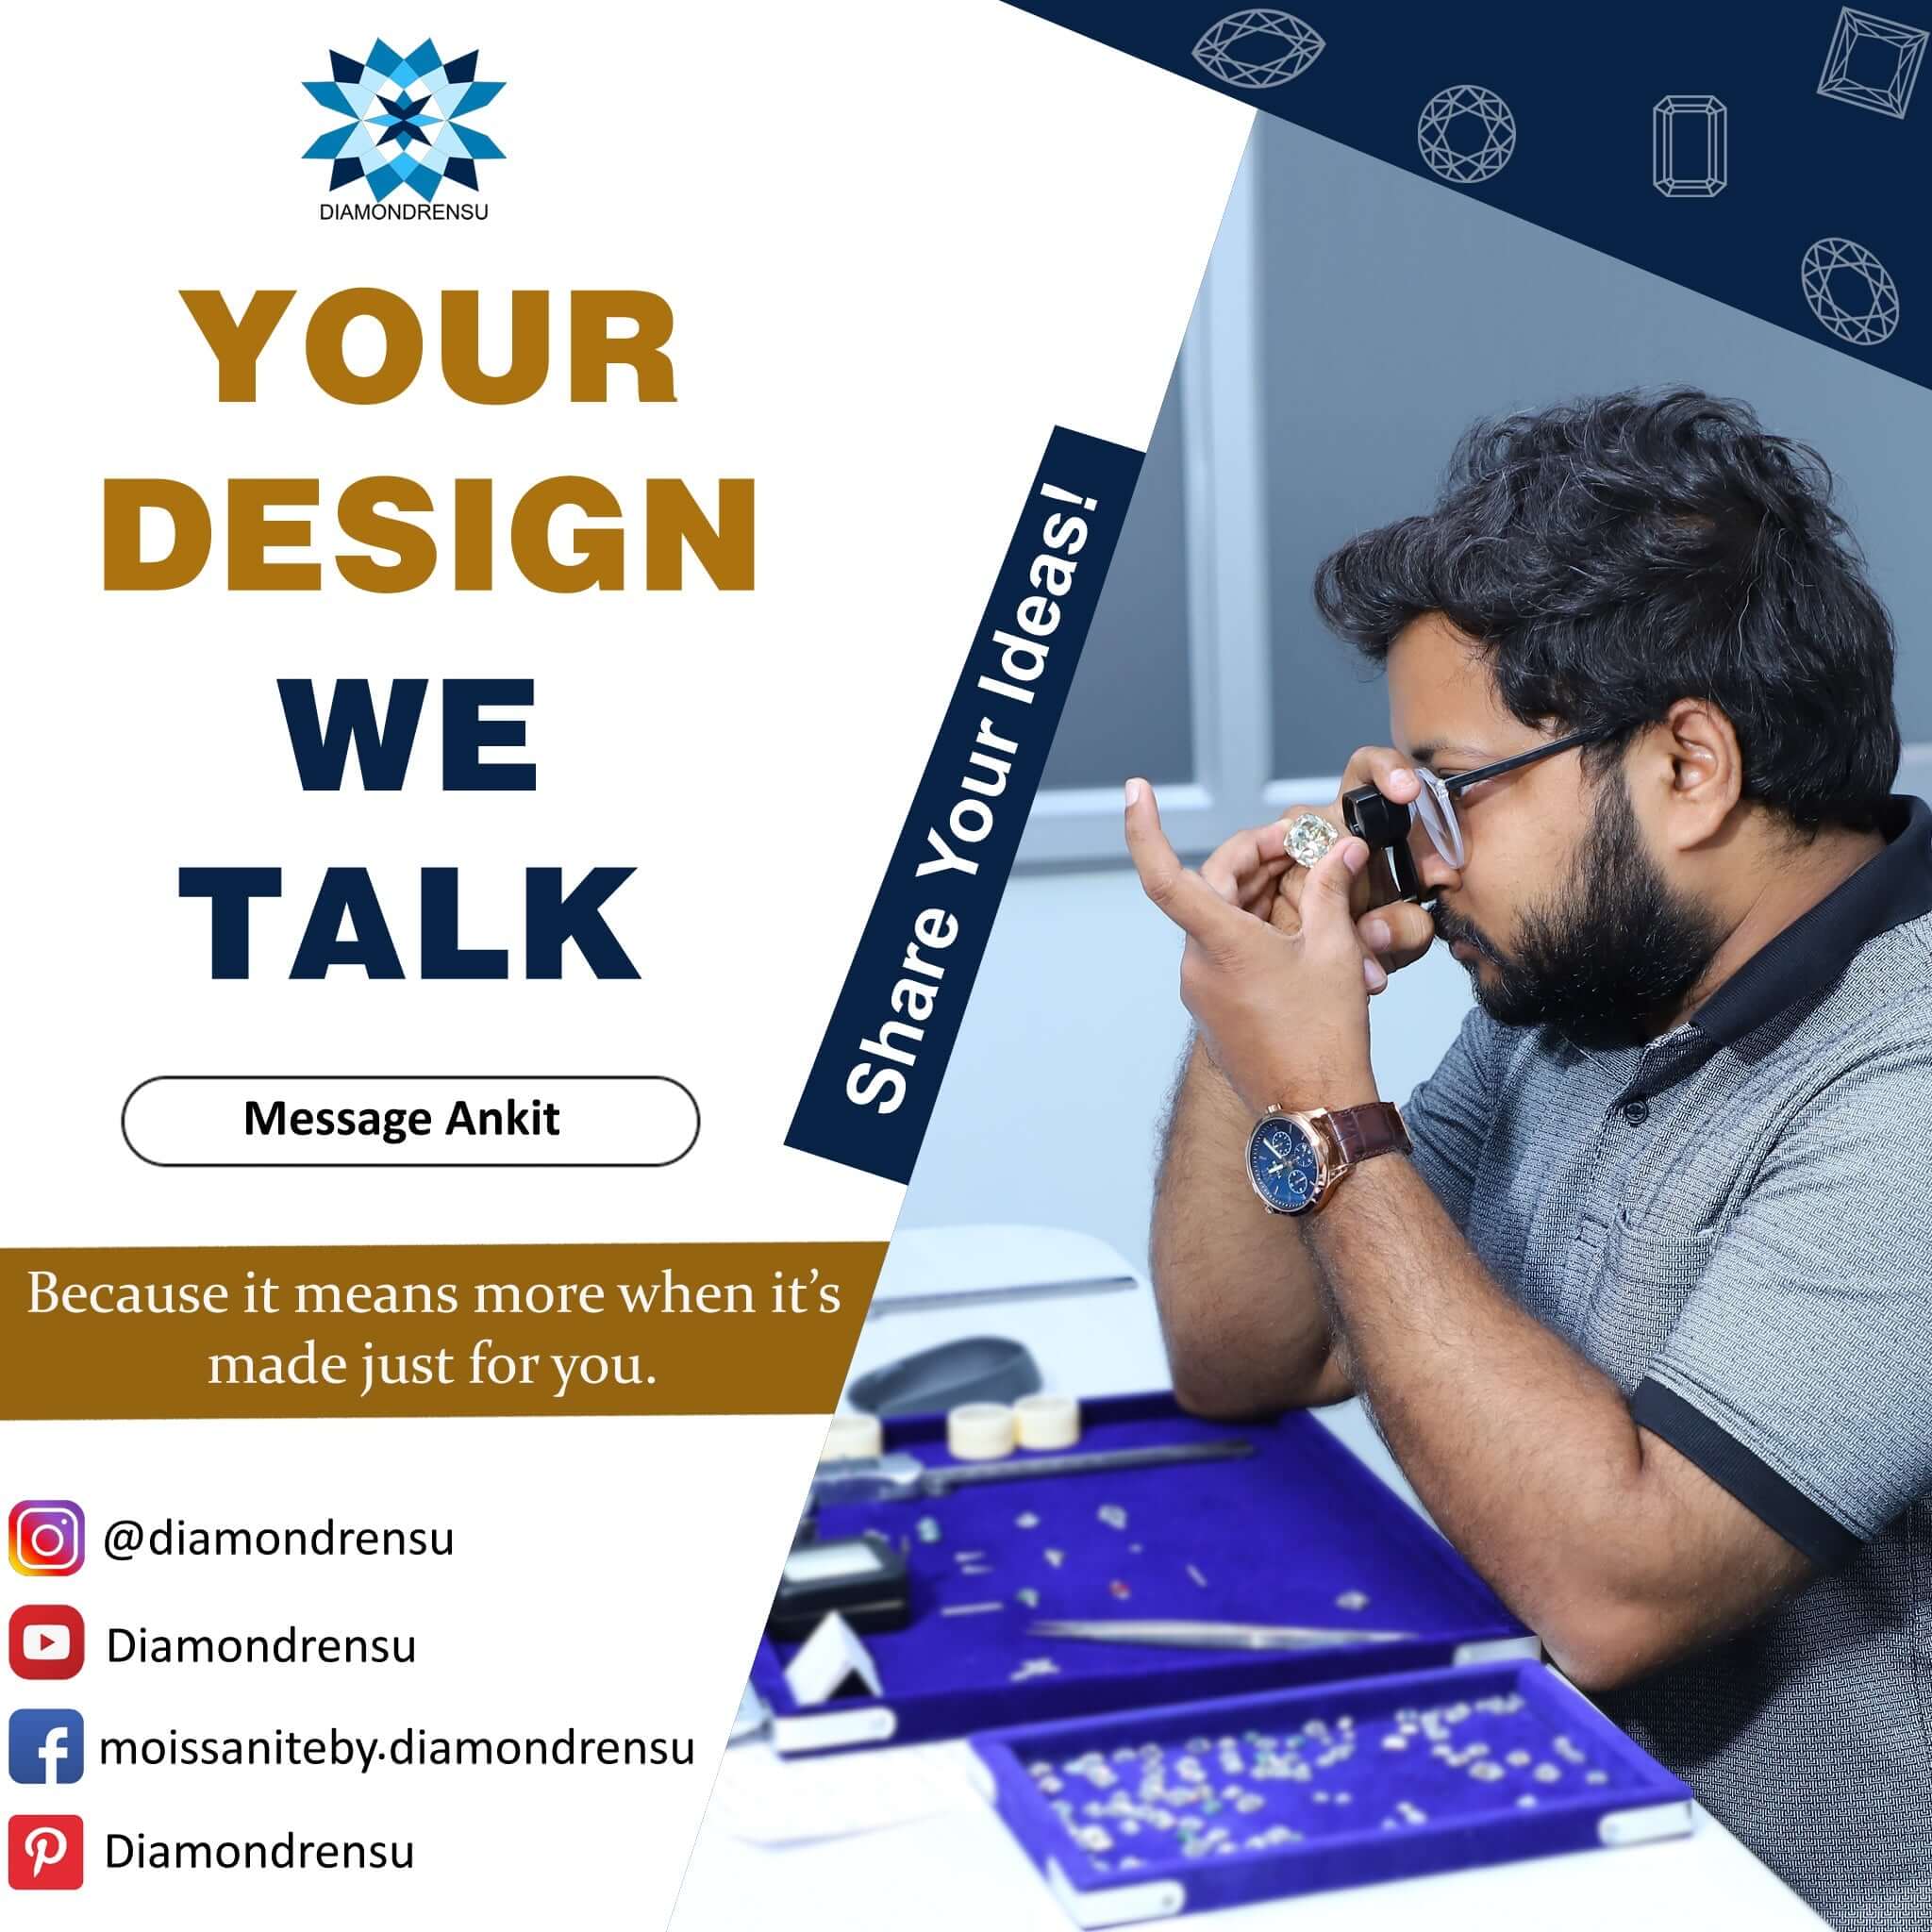 Your design we talk